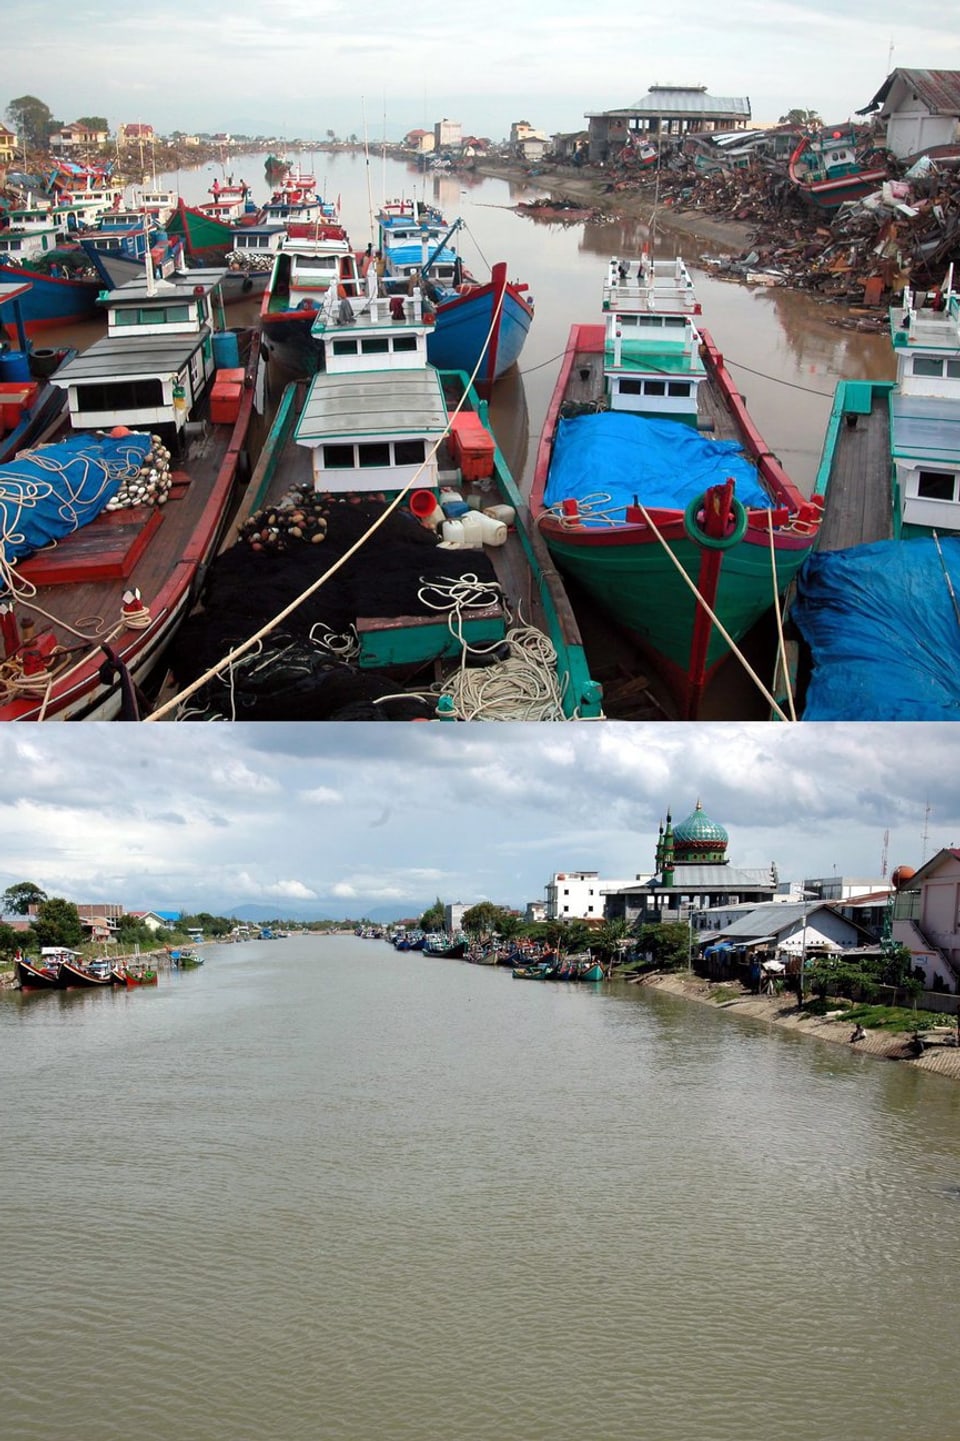 Der mit Schiffen verstopfte Fluss und die völlig zerstörten Häuser beim Fluss Aceh am 26.12.2004 und fünf Jahre später. (keystone)